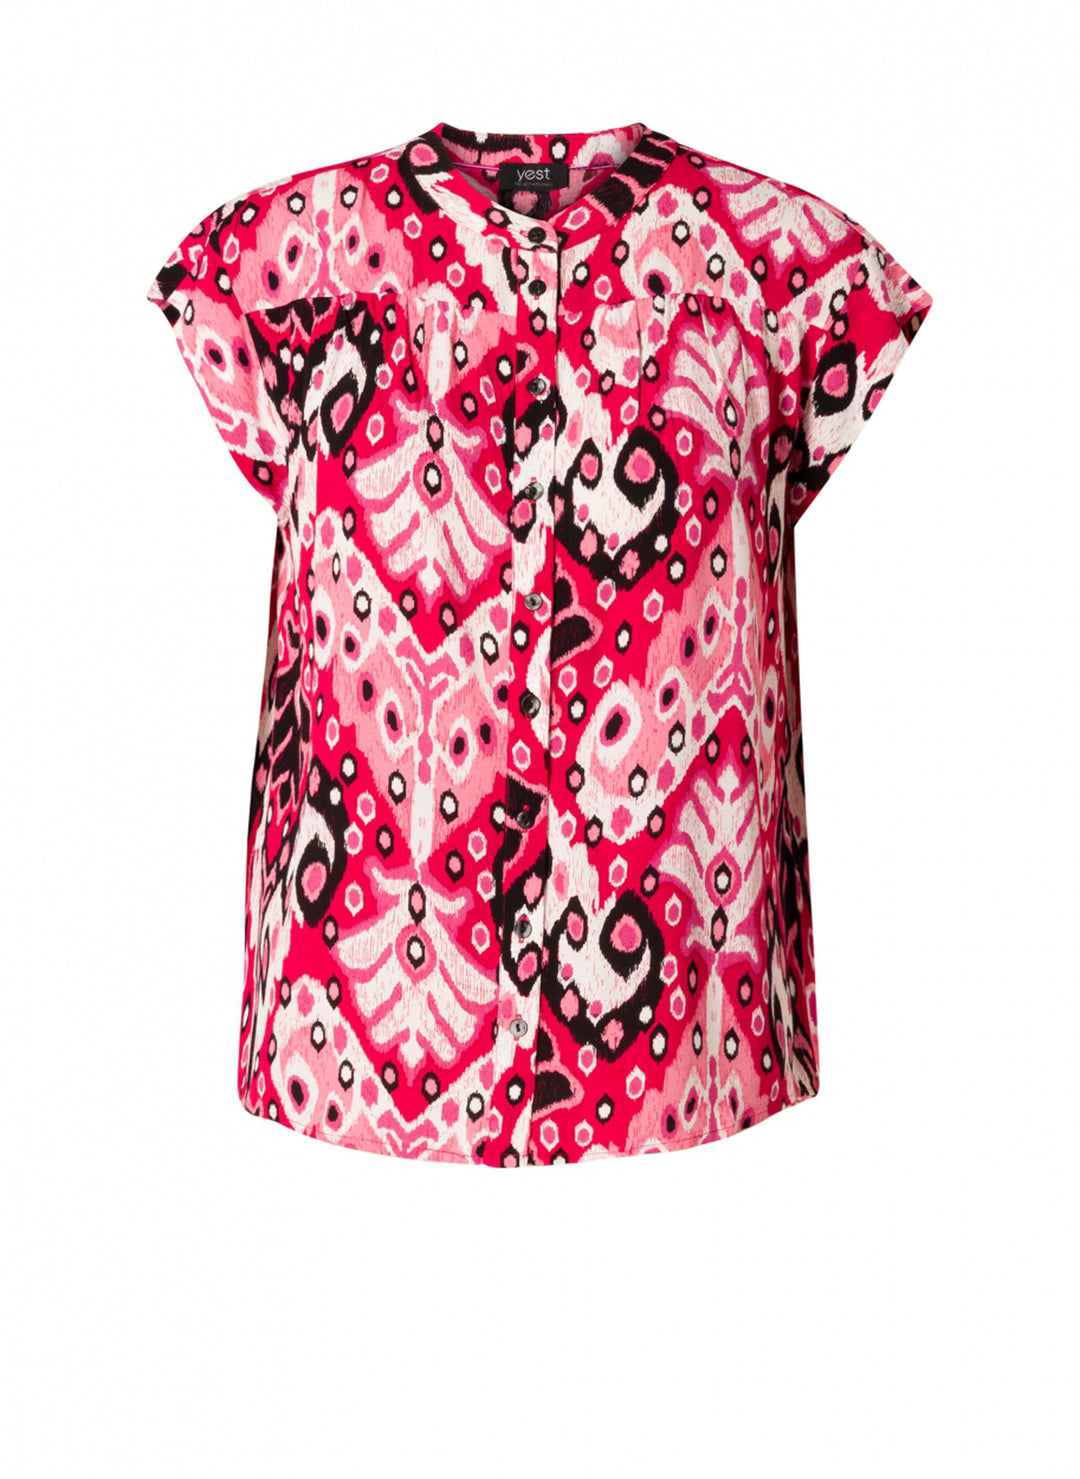 blouse in roze tinten - yesta - - grote maten - dameskleding - kledingwinkel - herent - leuven